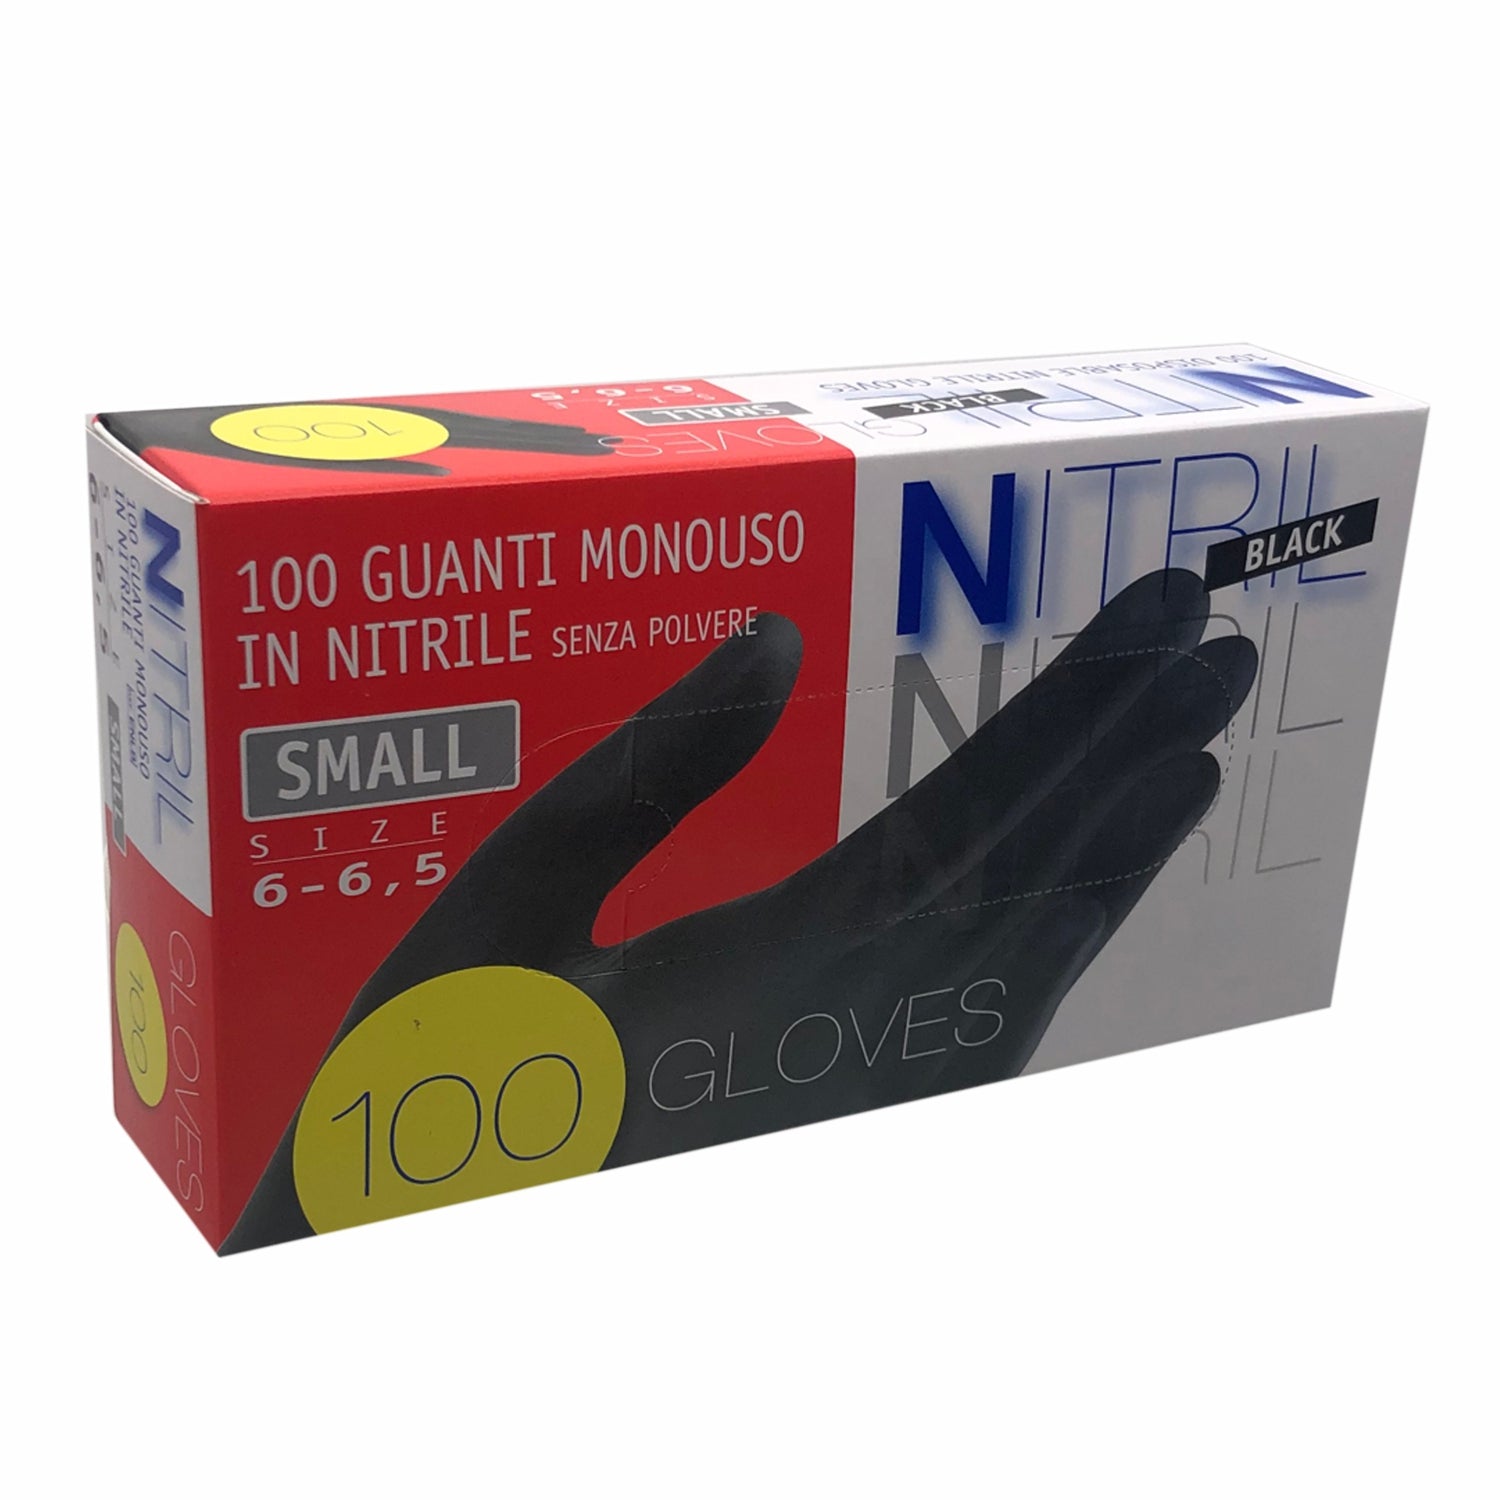 Palmpro essential 537 Nitril black guanti monouso in nitrile nero